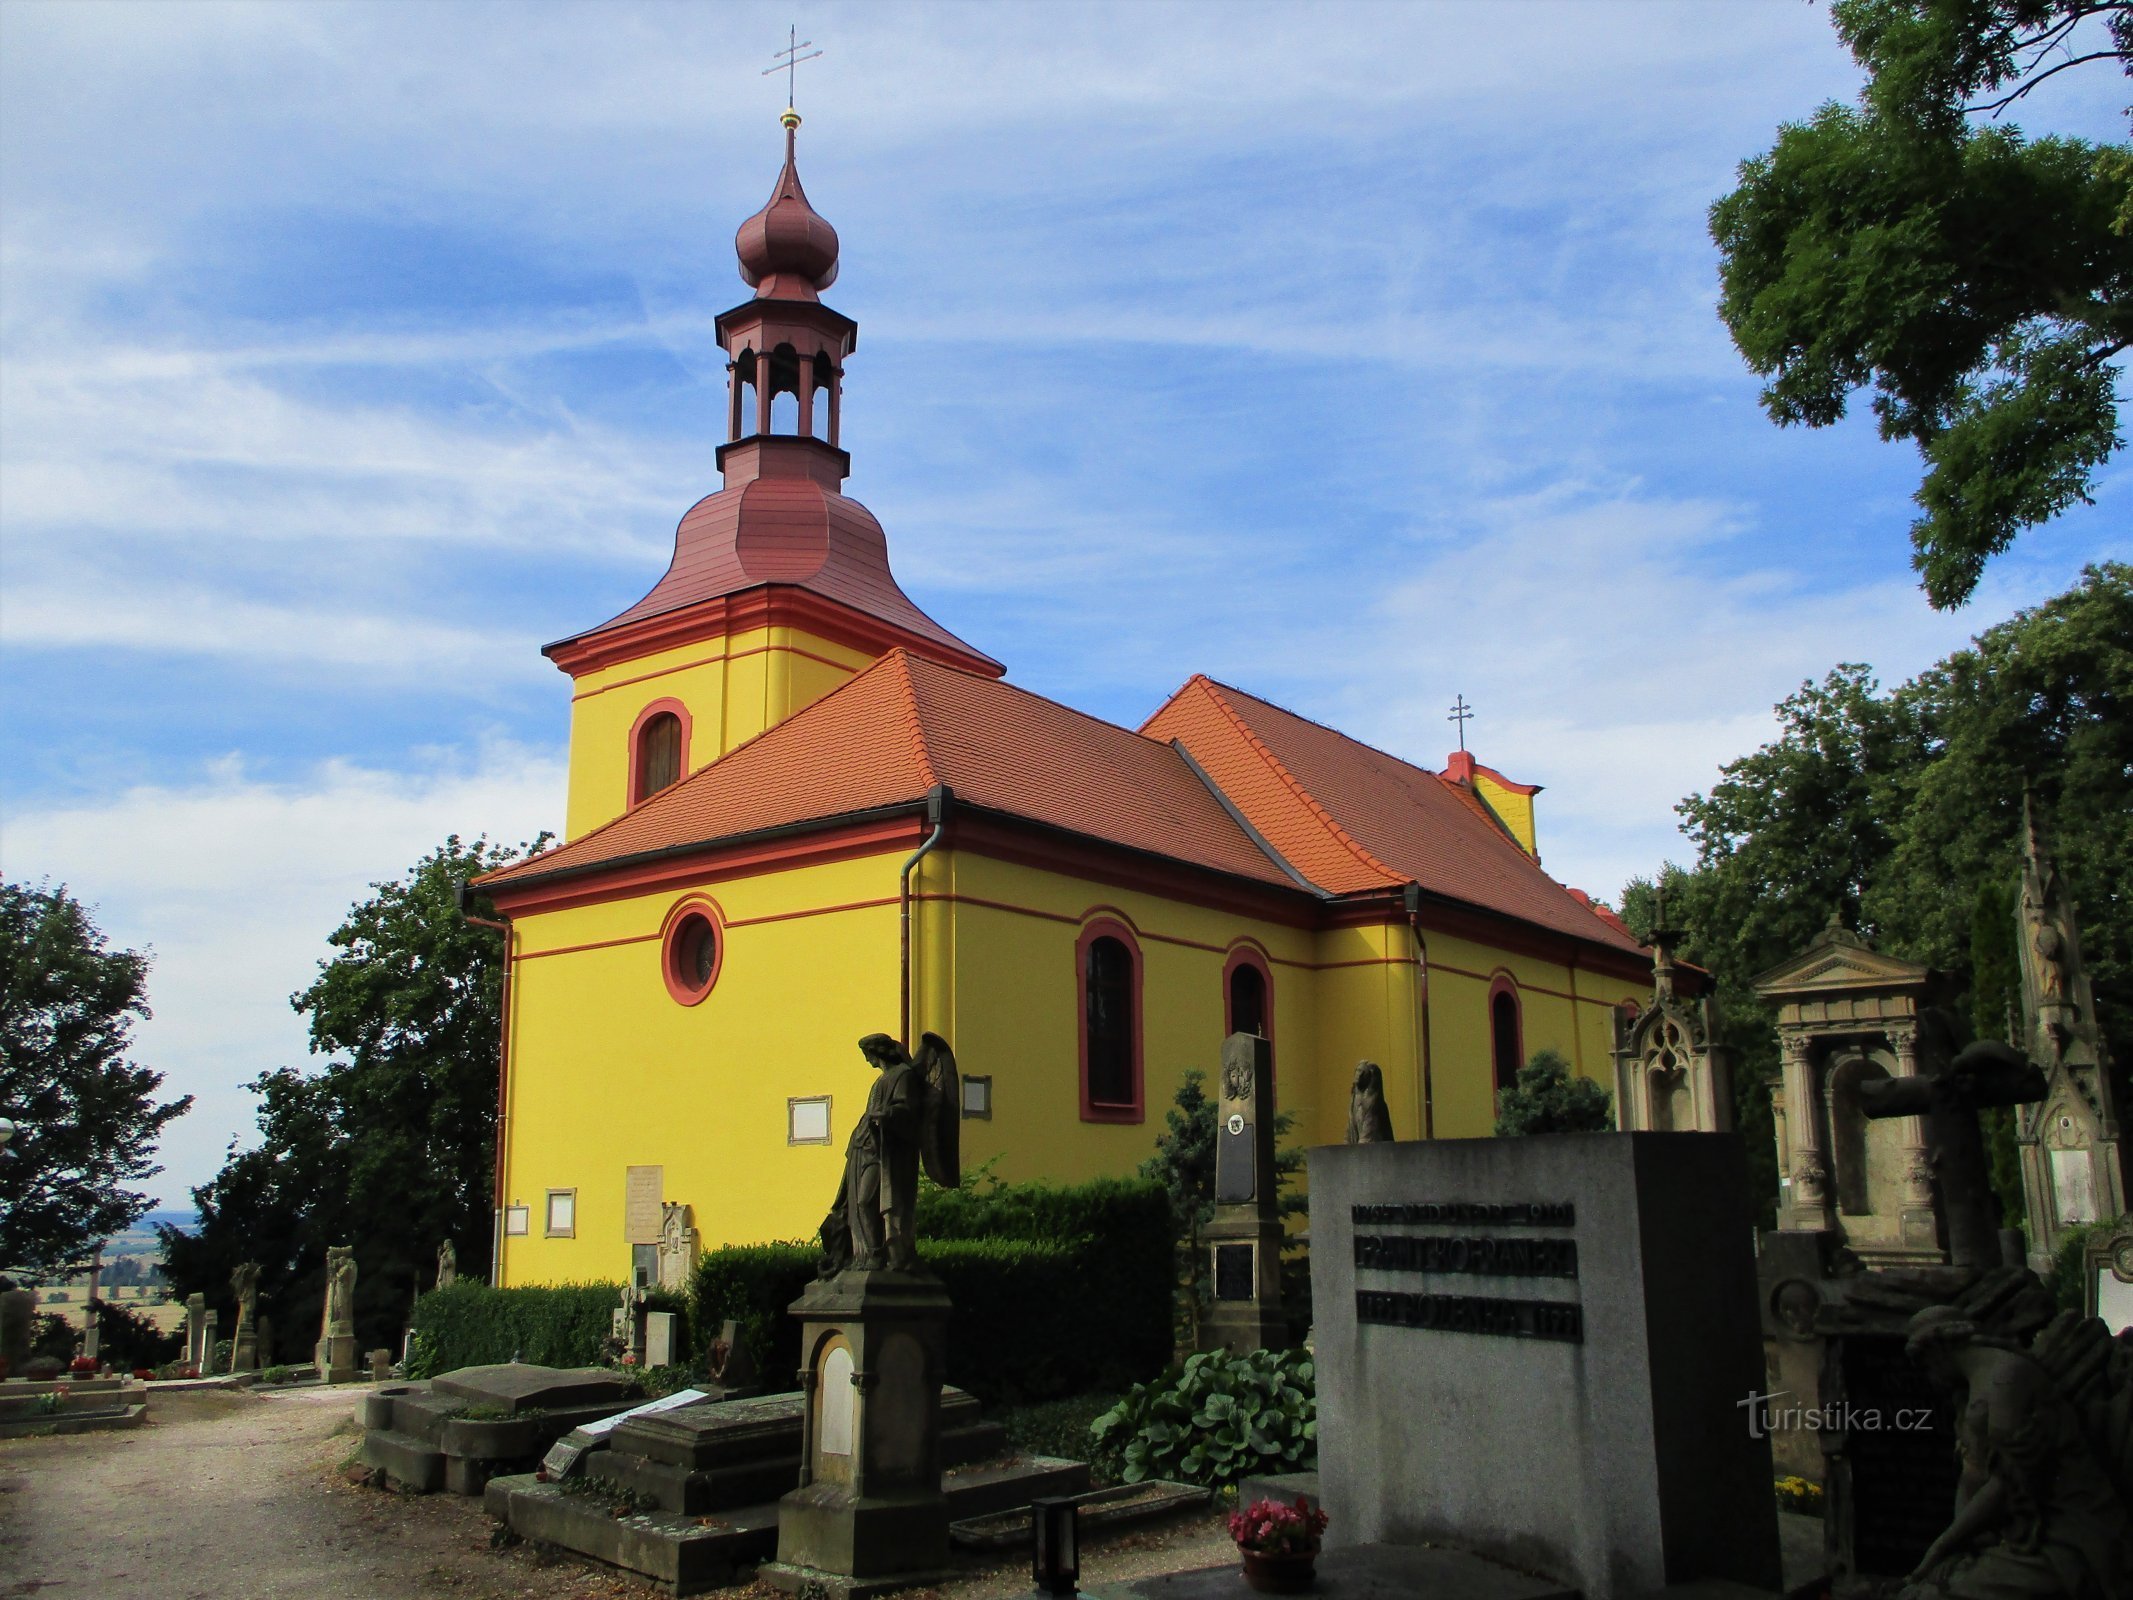 Цвинтарна церква св. Готард, єпископ (Горжице, 26.7.2020)